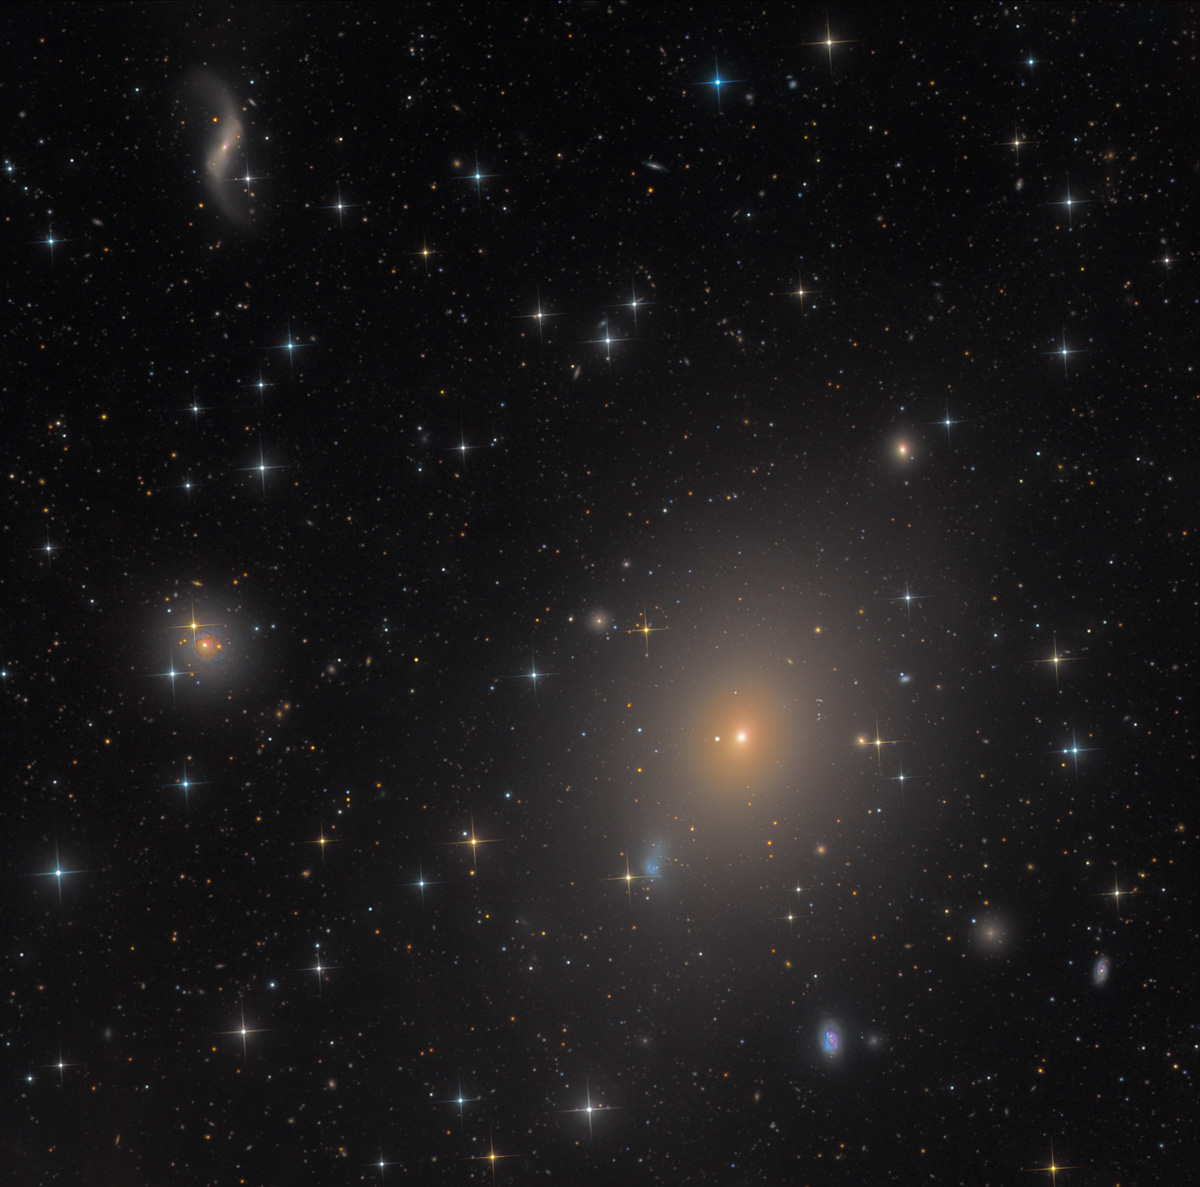 Messier 49 in Virgo